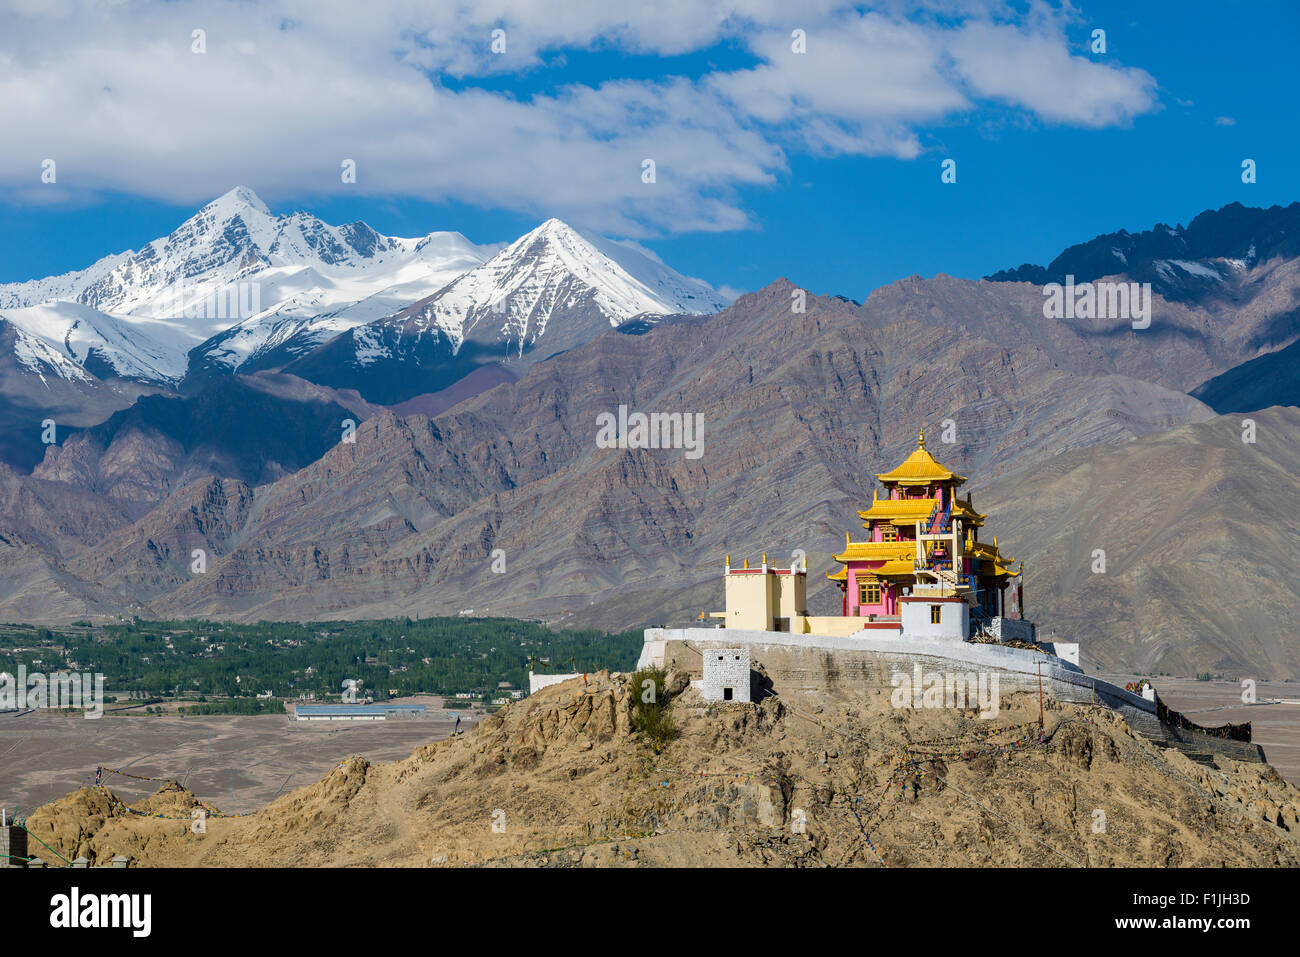 Das Kloster Samdok Palgeri Gompa auf einem Hügel hoch über Choglomsar, dem Indus-Tal und dem Schnee bedeckt Berge in der Ferne Stockfoto